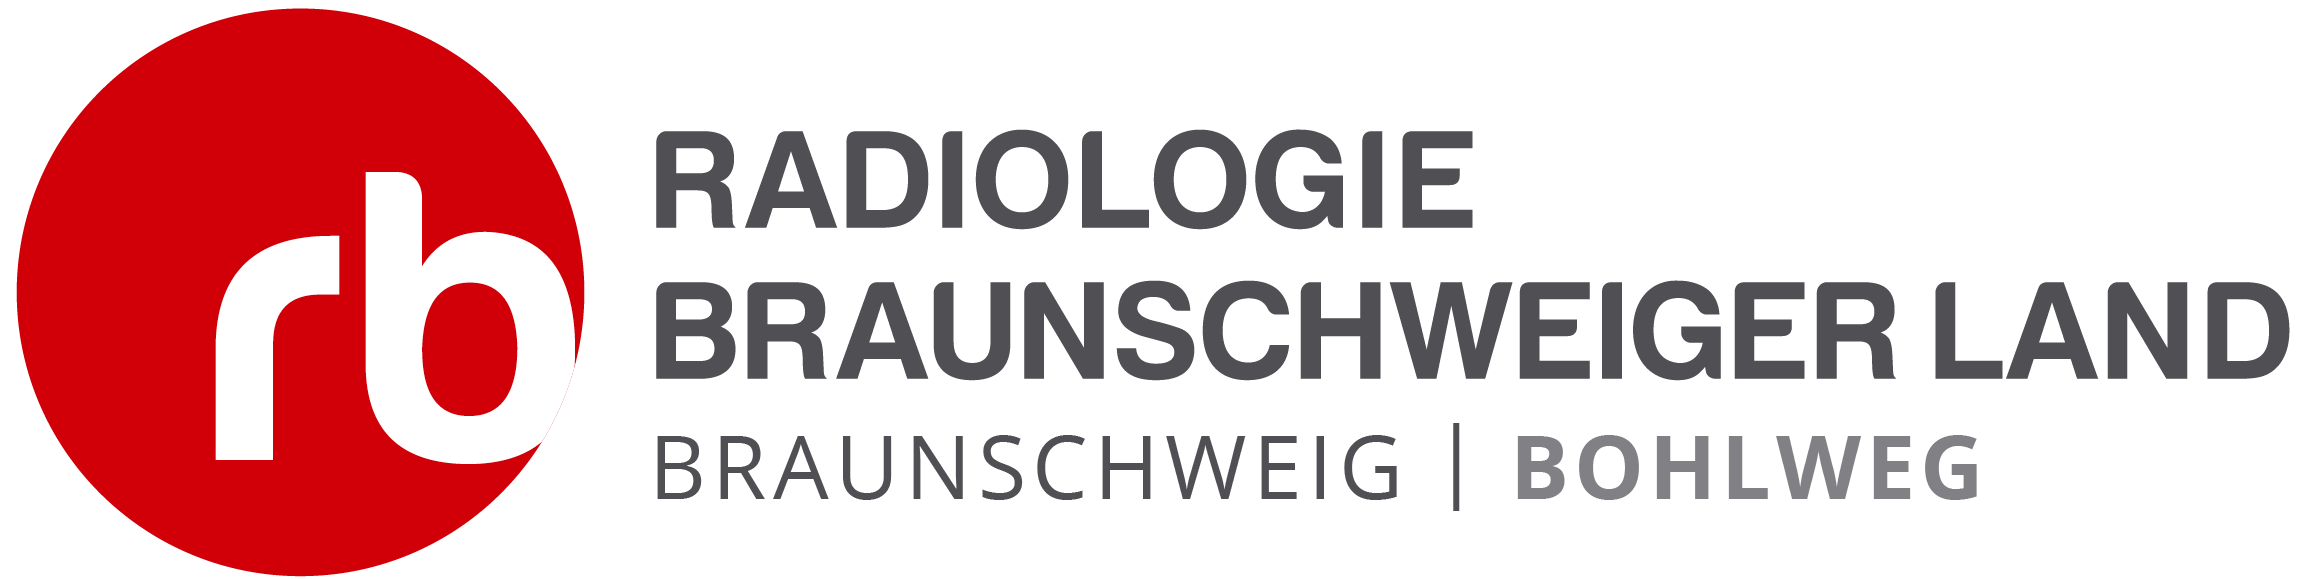 Radiologie Bohlweg